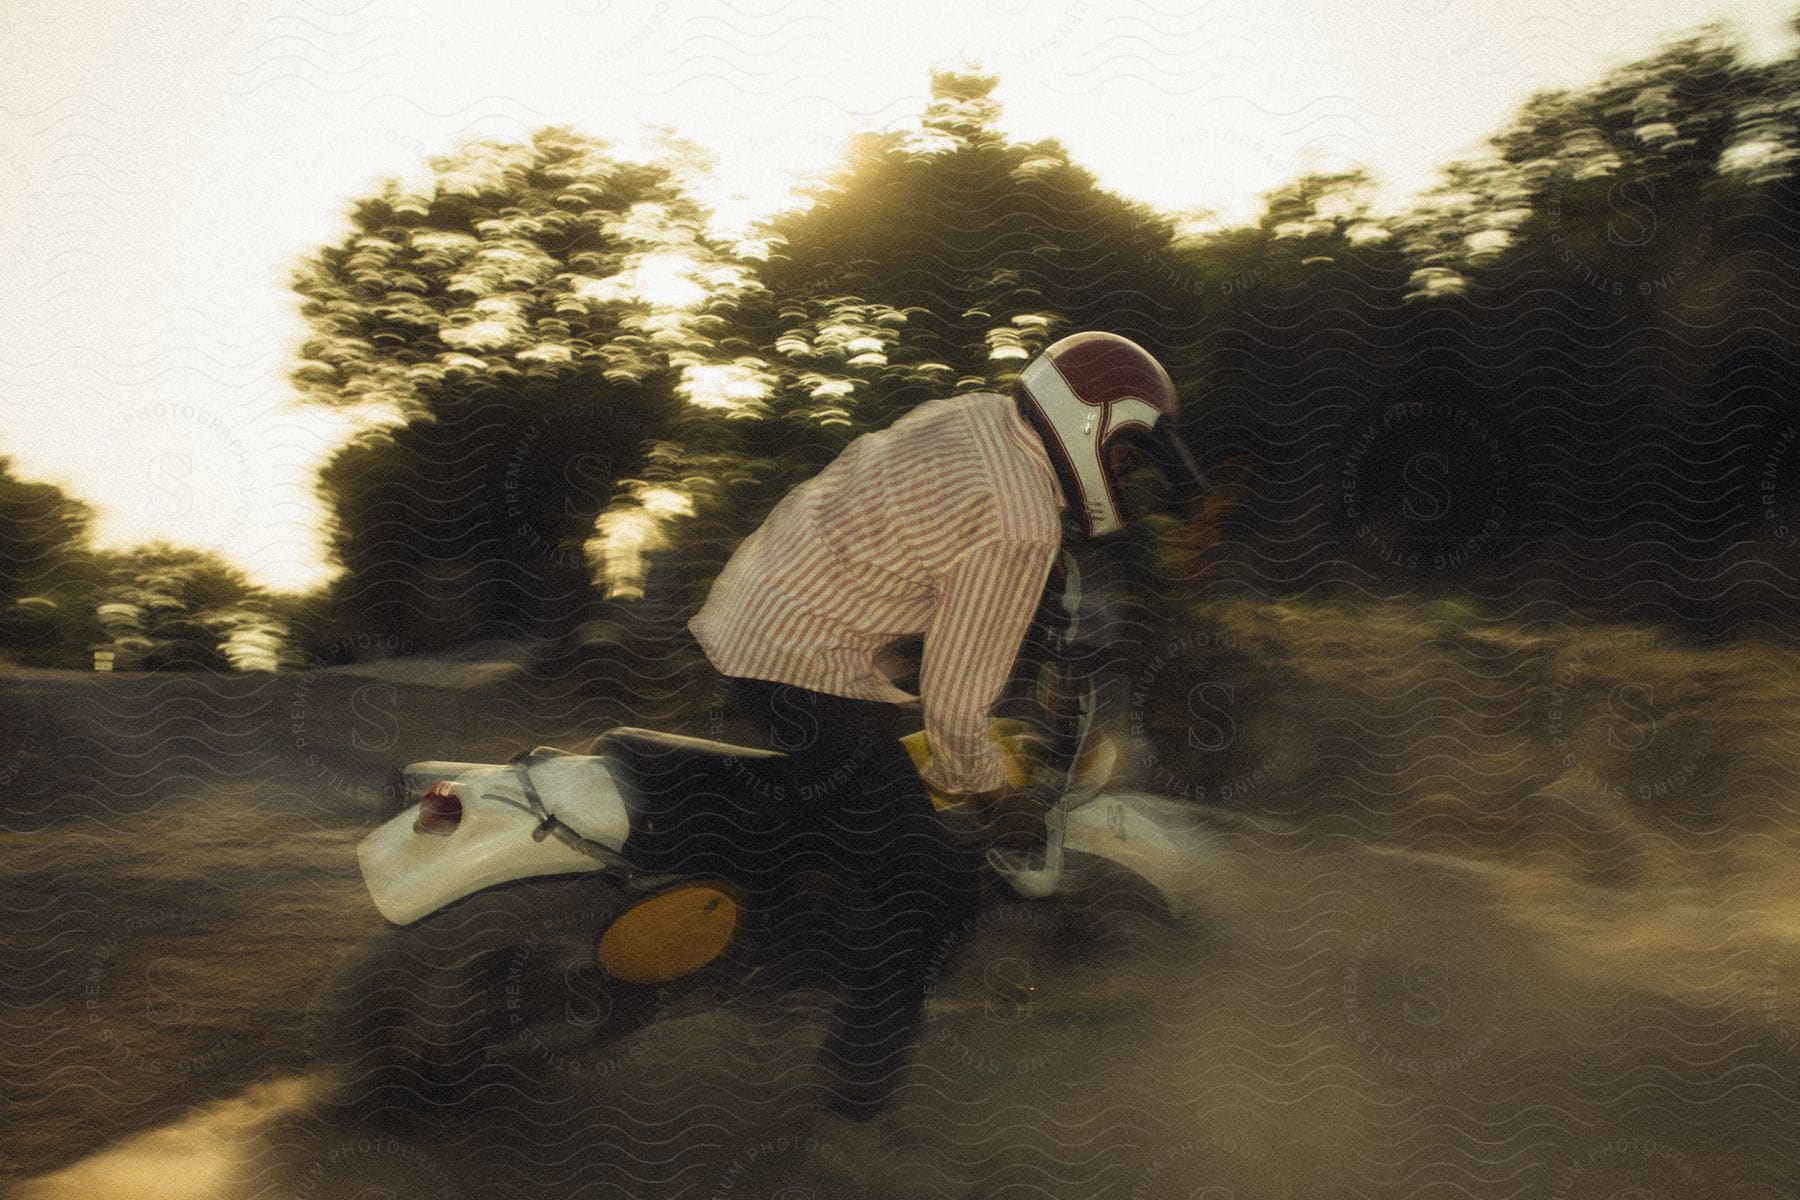 A man riding a dirt bike through a birm outdoors.